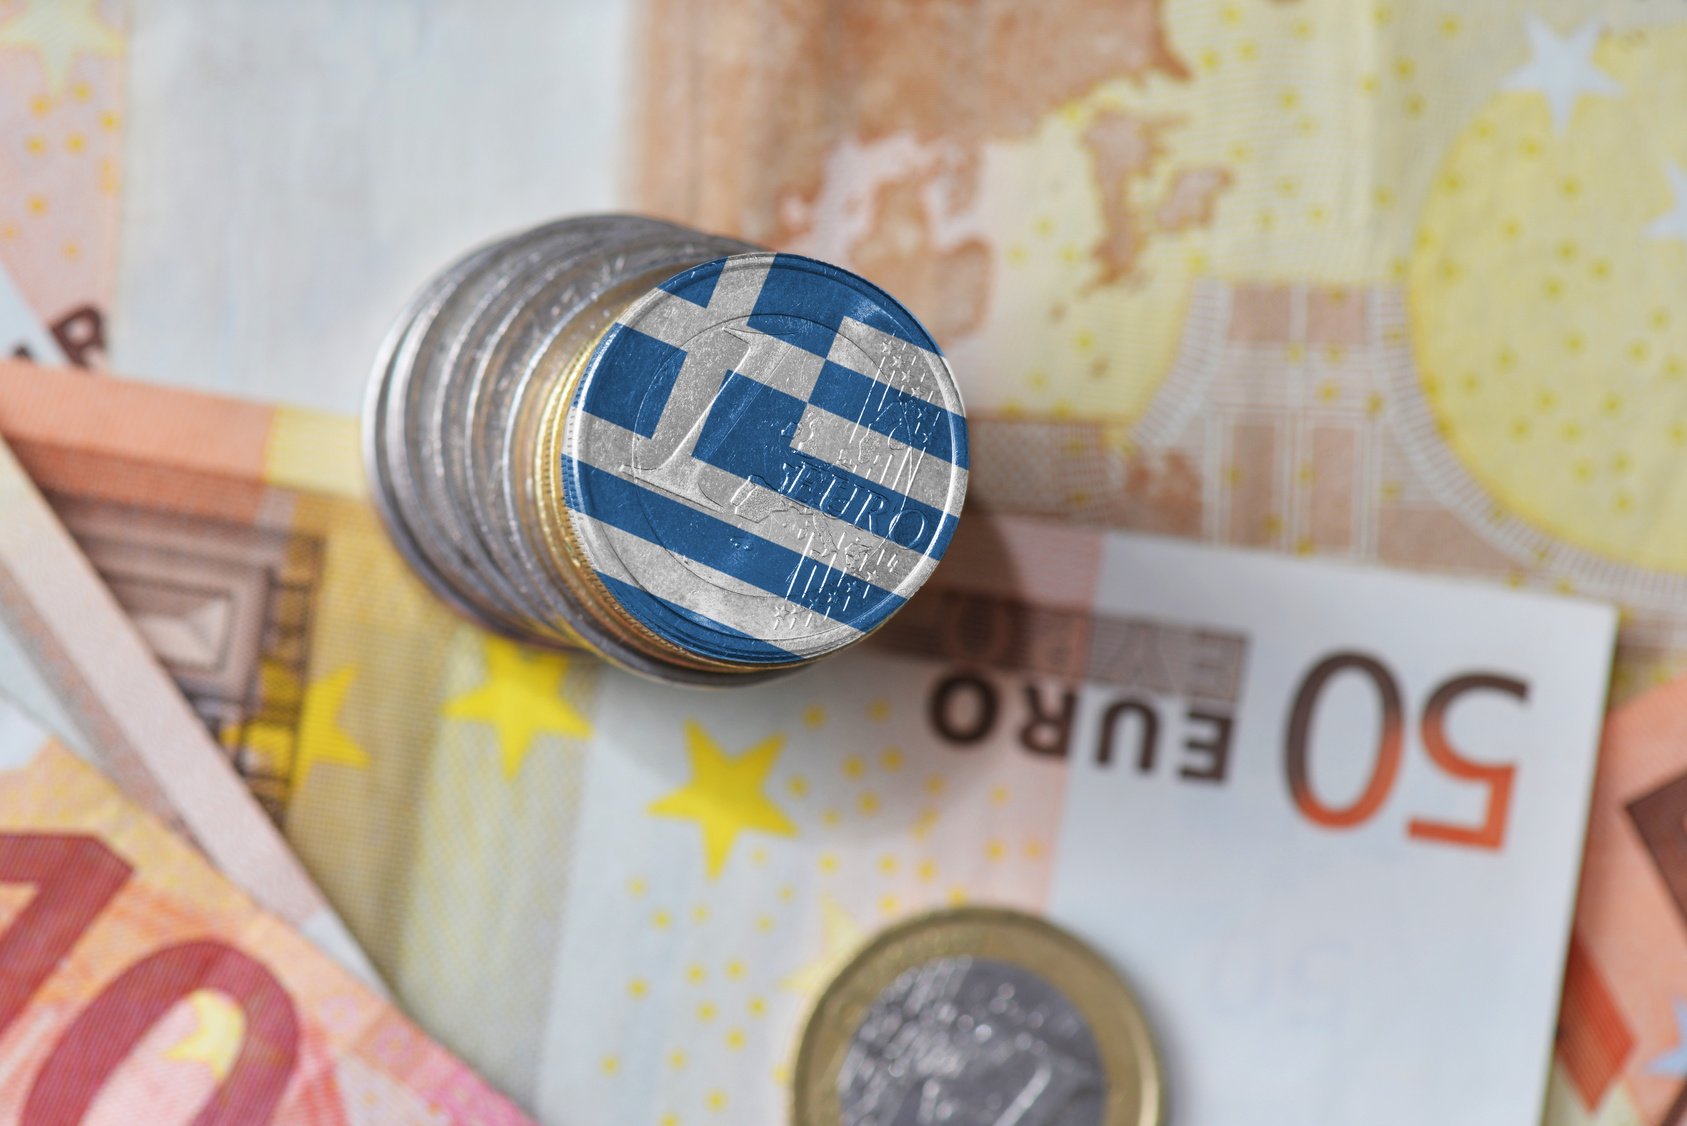 Παπαθανάσης: Θετική αξιολόγηση της ΕΕ για το αναθεωρημένο Εθνικό Σχέδιο Ανάκαμψης ύψους 36 δισ. ευρώ